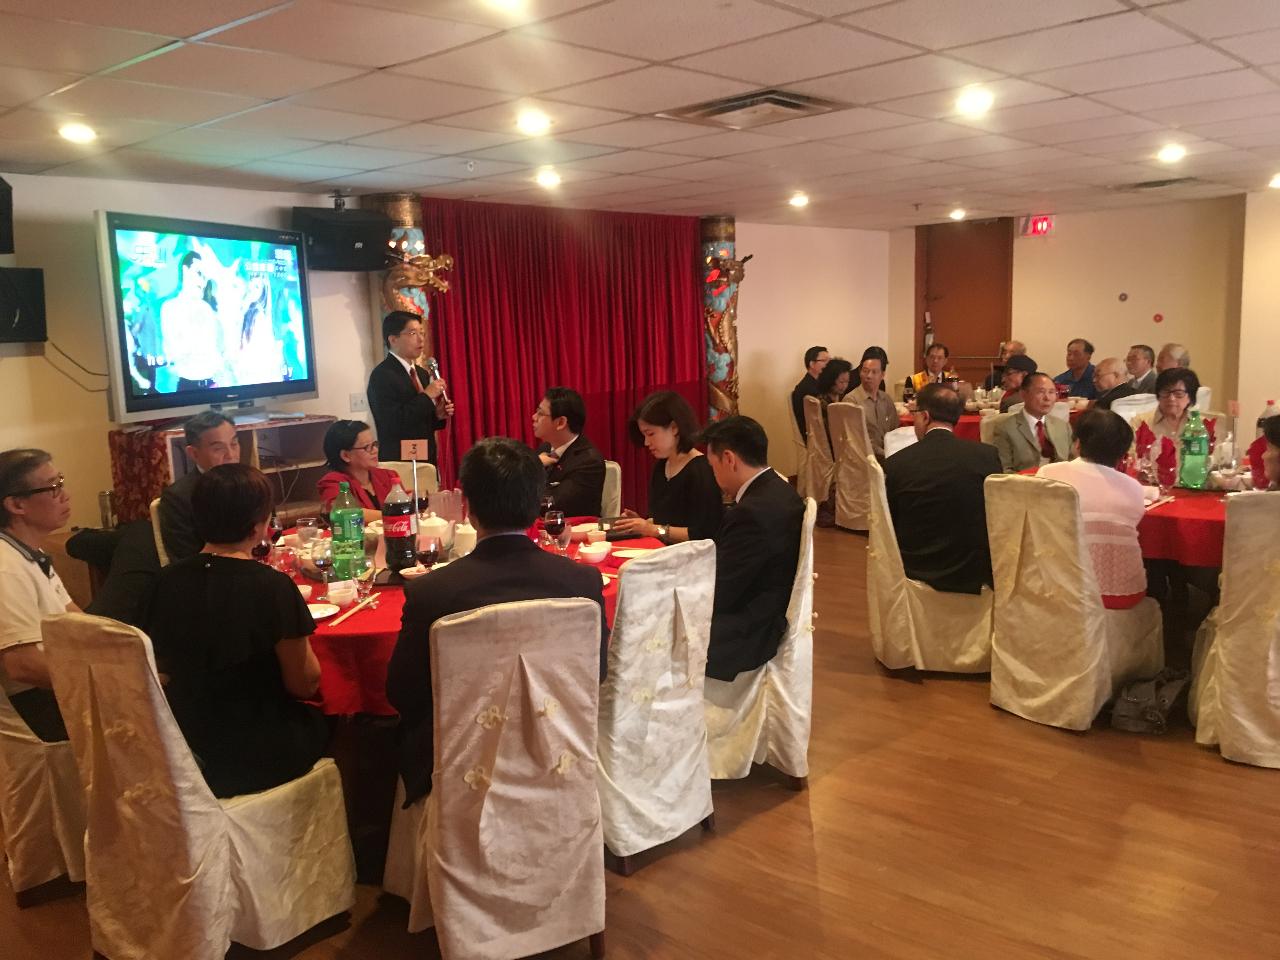 陳大使中午於蒙特婁紅寶石餐廳設宴款待僑社負責人、僑職人員及僑領